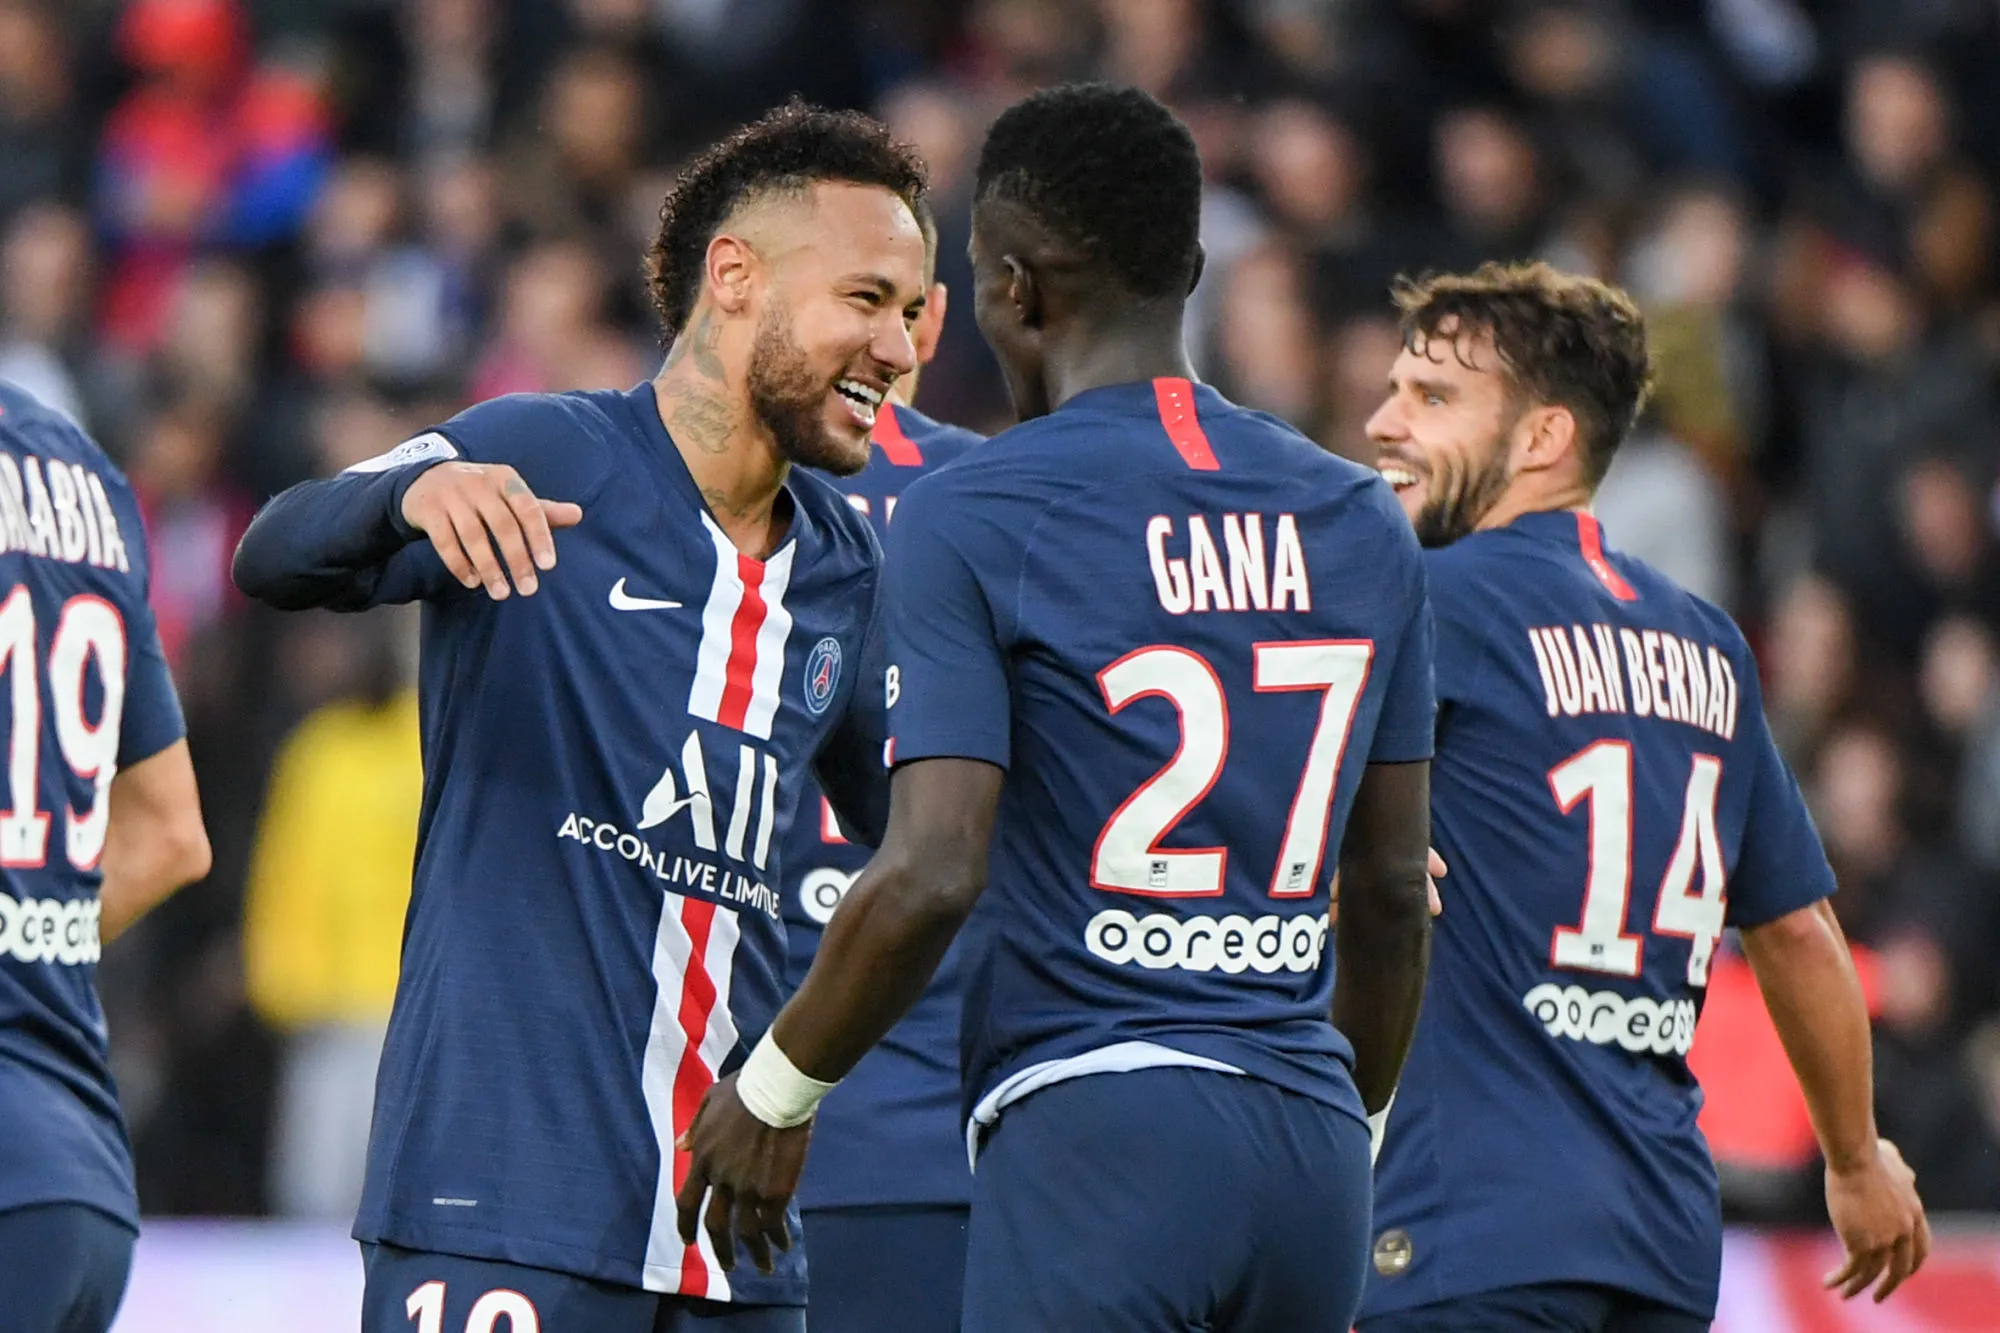 Pronostic PSG Nantes : Analyse, prono et cotes du match de Ligue 1